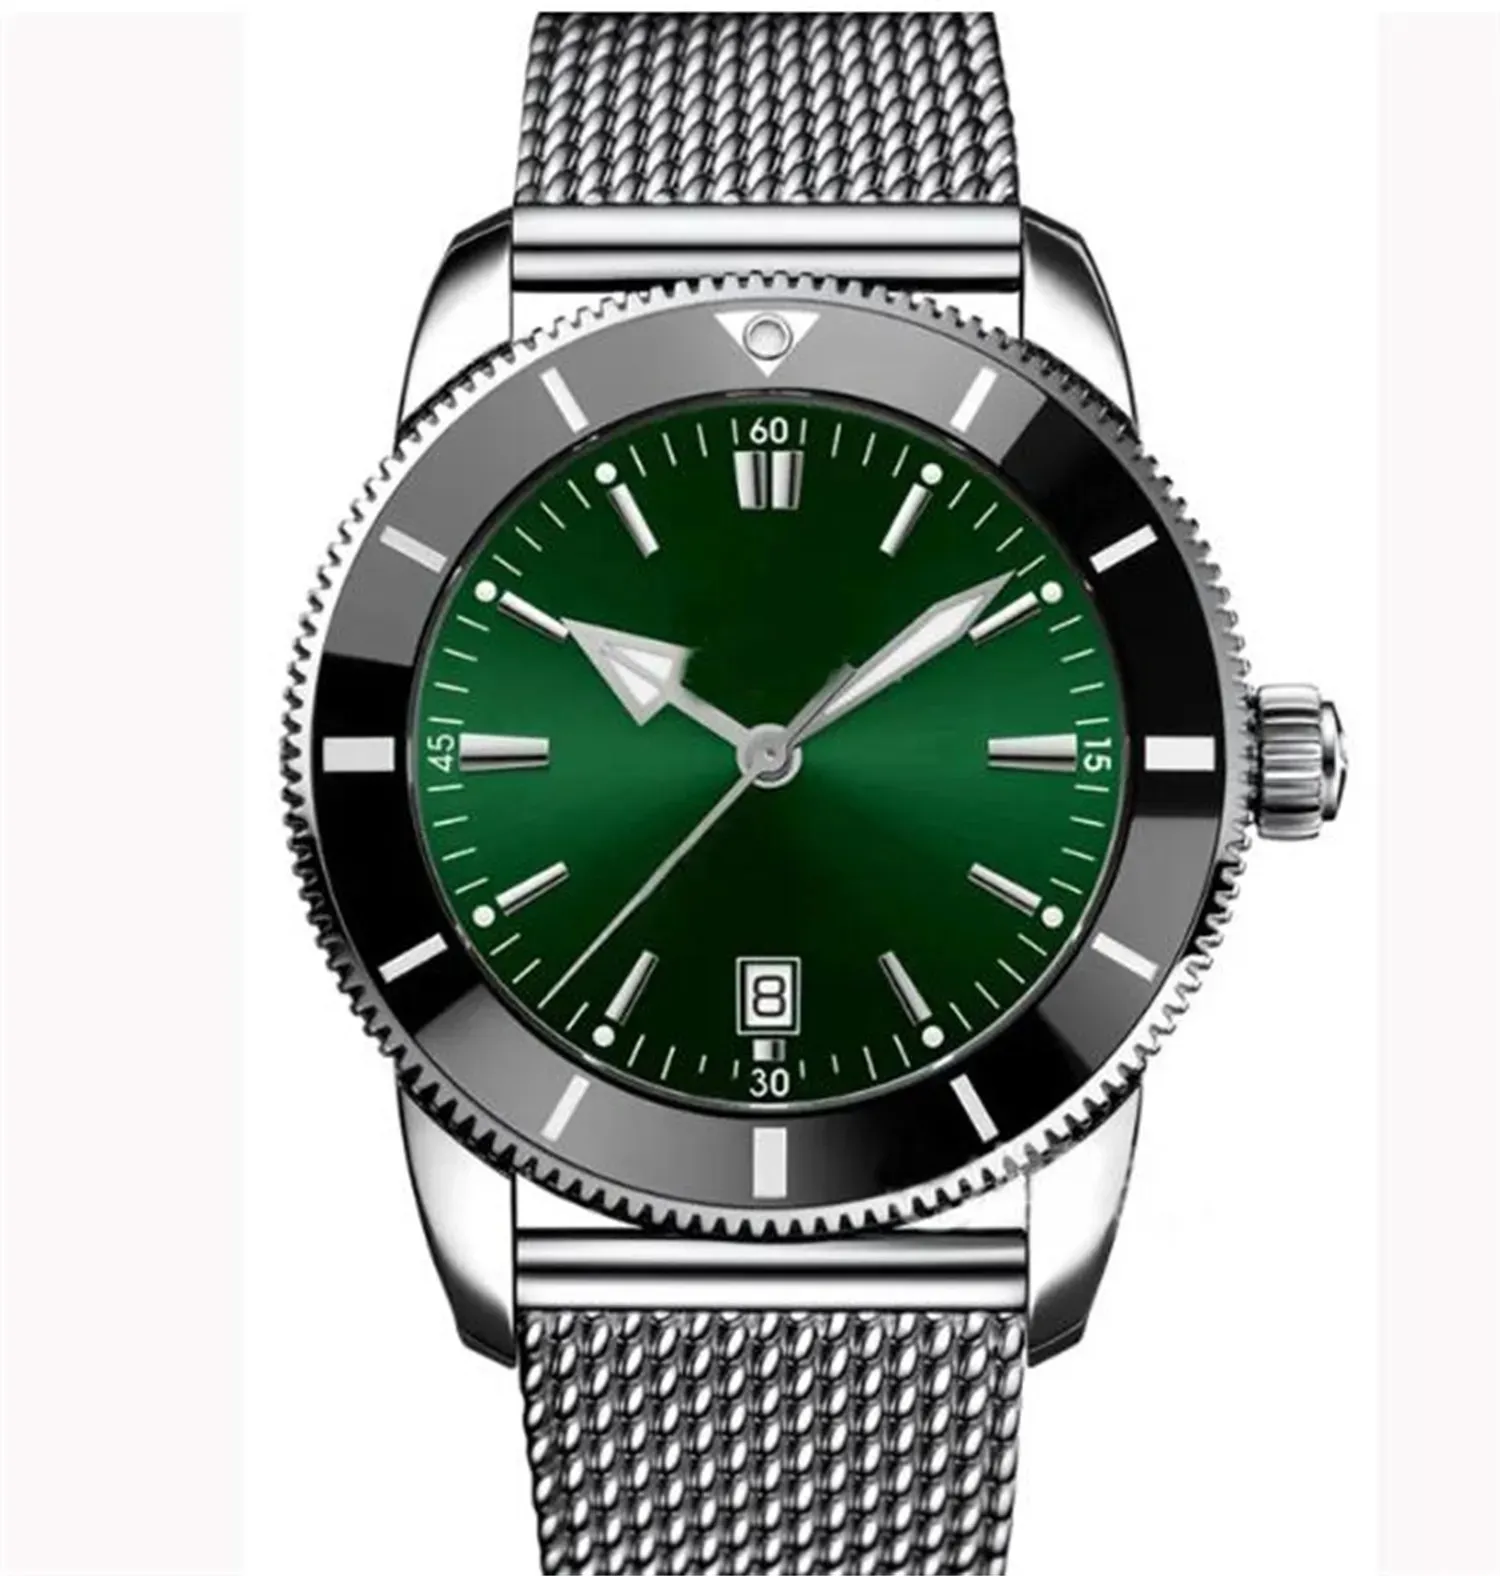 Top AAA Bretiling Luxusmarke Super Ocean Marine Heritage Uhr Zweifarbiges Datum B01 B03 B20 Kaliber Automatisches mechanisches Uhrwerk Index 1884 CmnX Herrenarmbanduhren